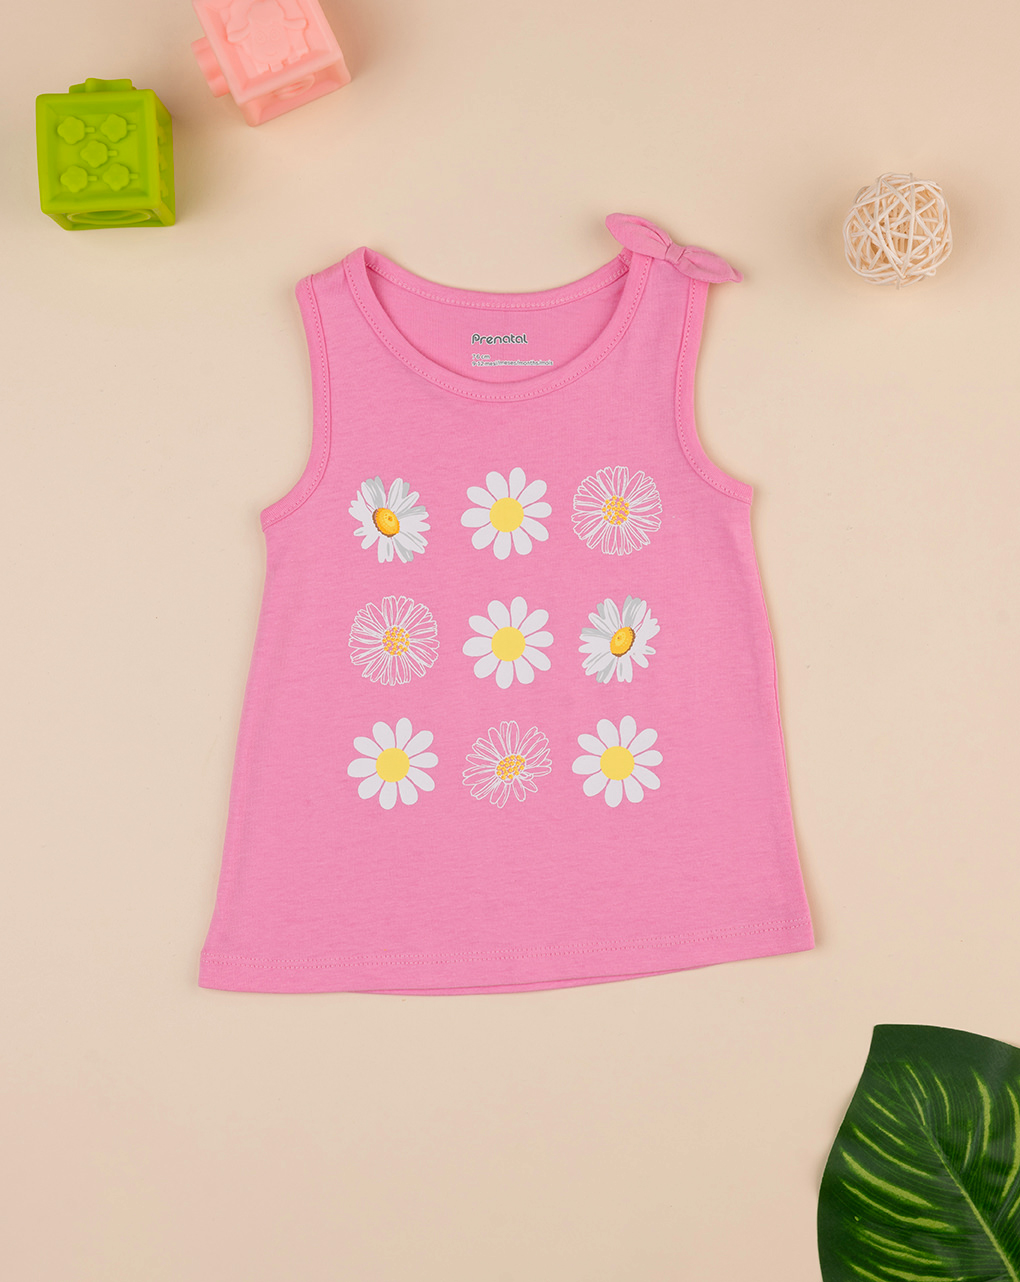 βρεφική αμάνικη μπλούζα ροζ με μαργαρίτες για κορίτσι